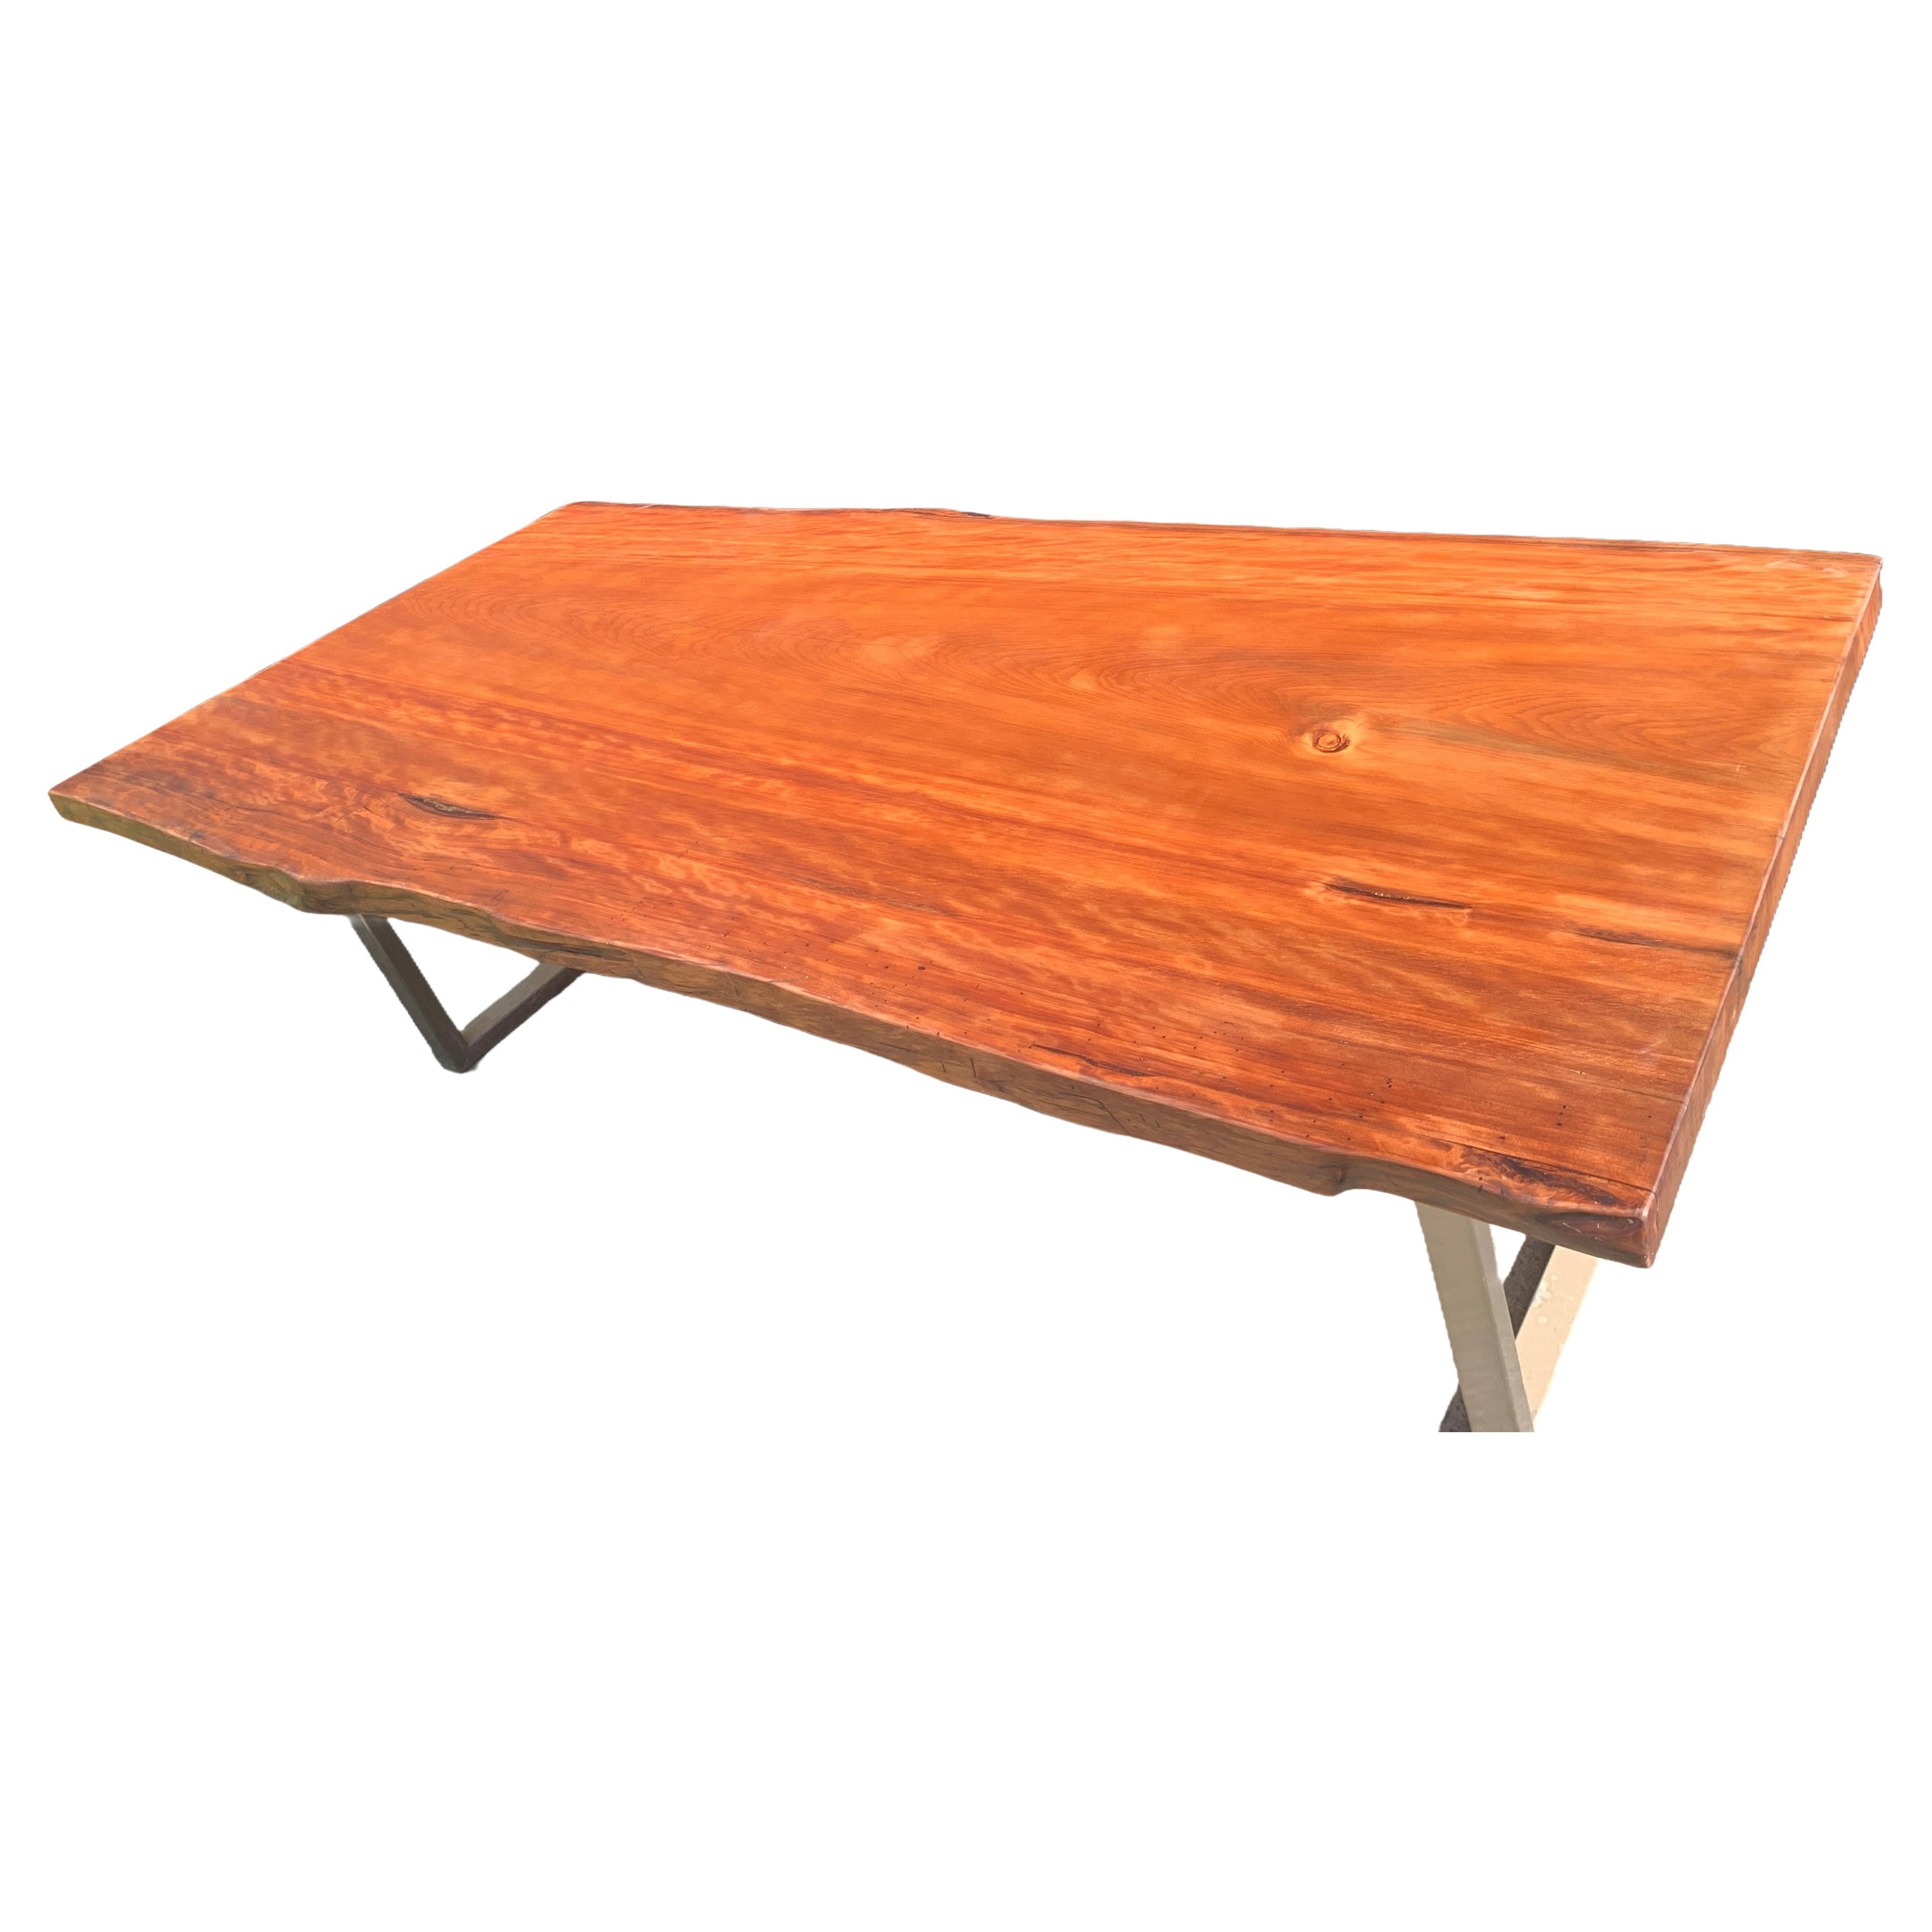 Table de salle à manger ronde Kauri 2,4 m x 1,2 m en bois massif de Kauri ancien